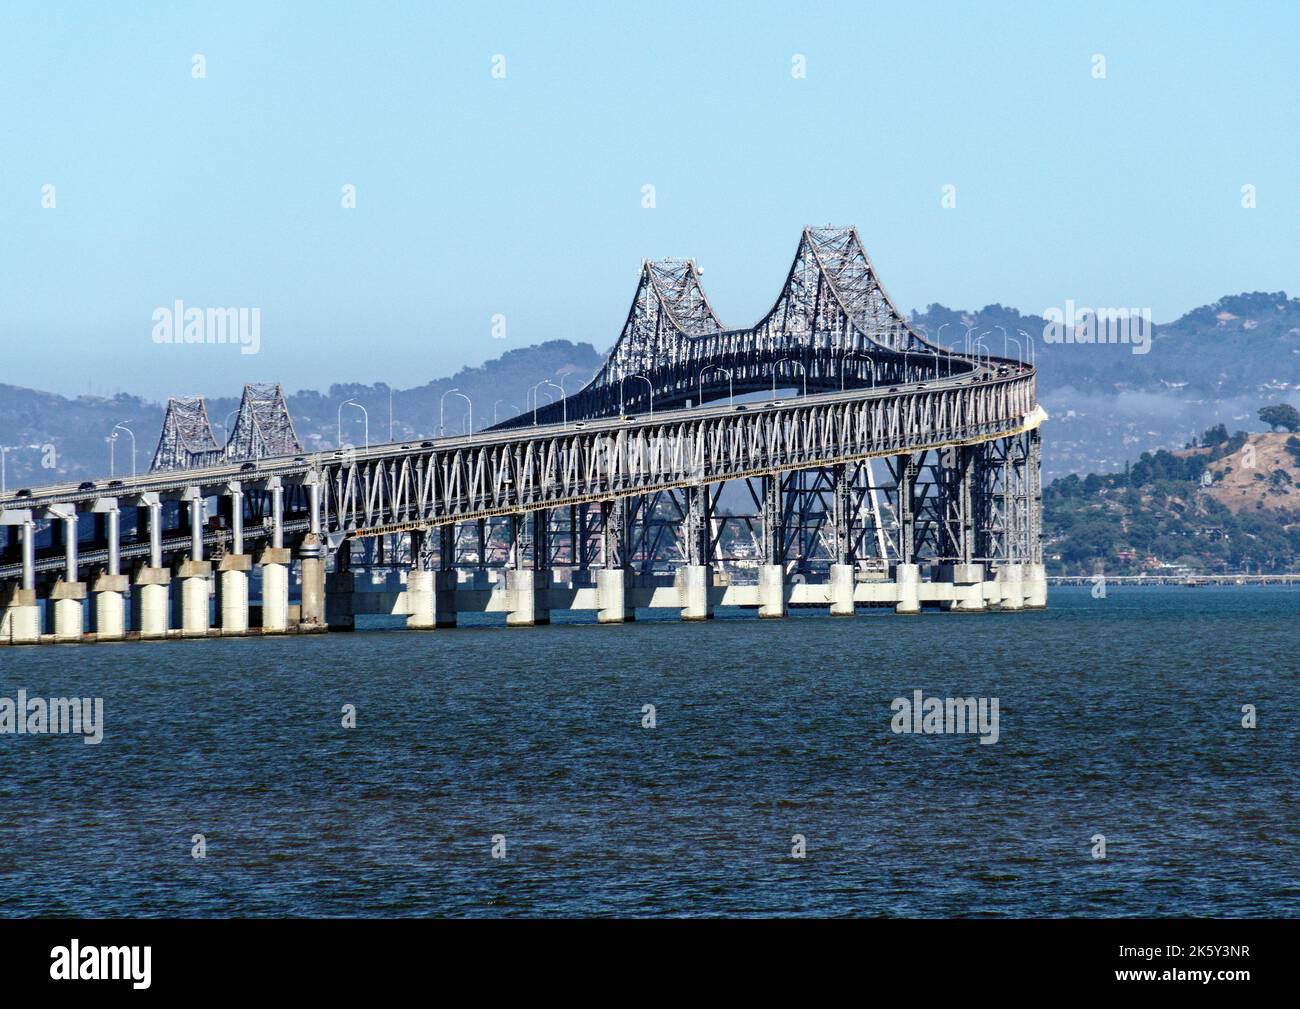 Le pont Richmond-San Rafael et l'artère importante reliant San Rafael et Richmond à travers la région de North Bay de la baie de San Francisco. Banque D'Images